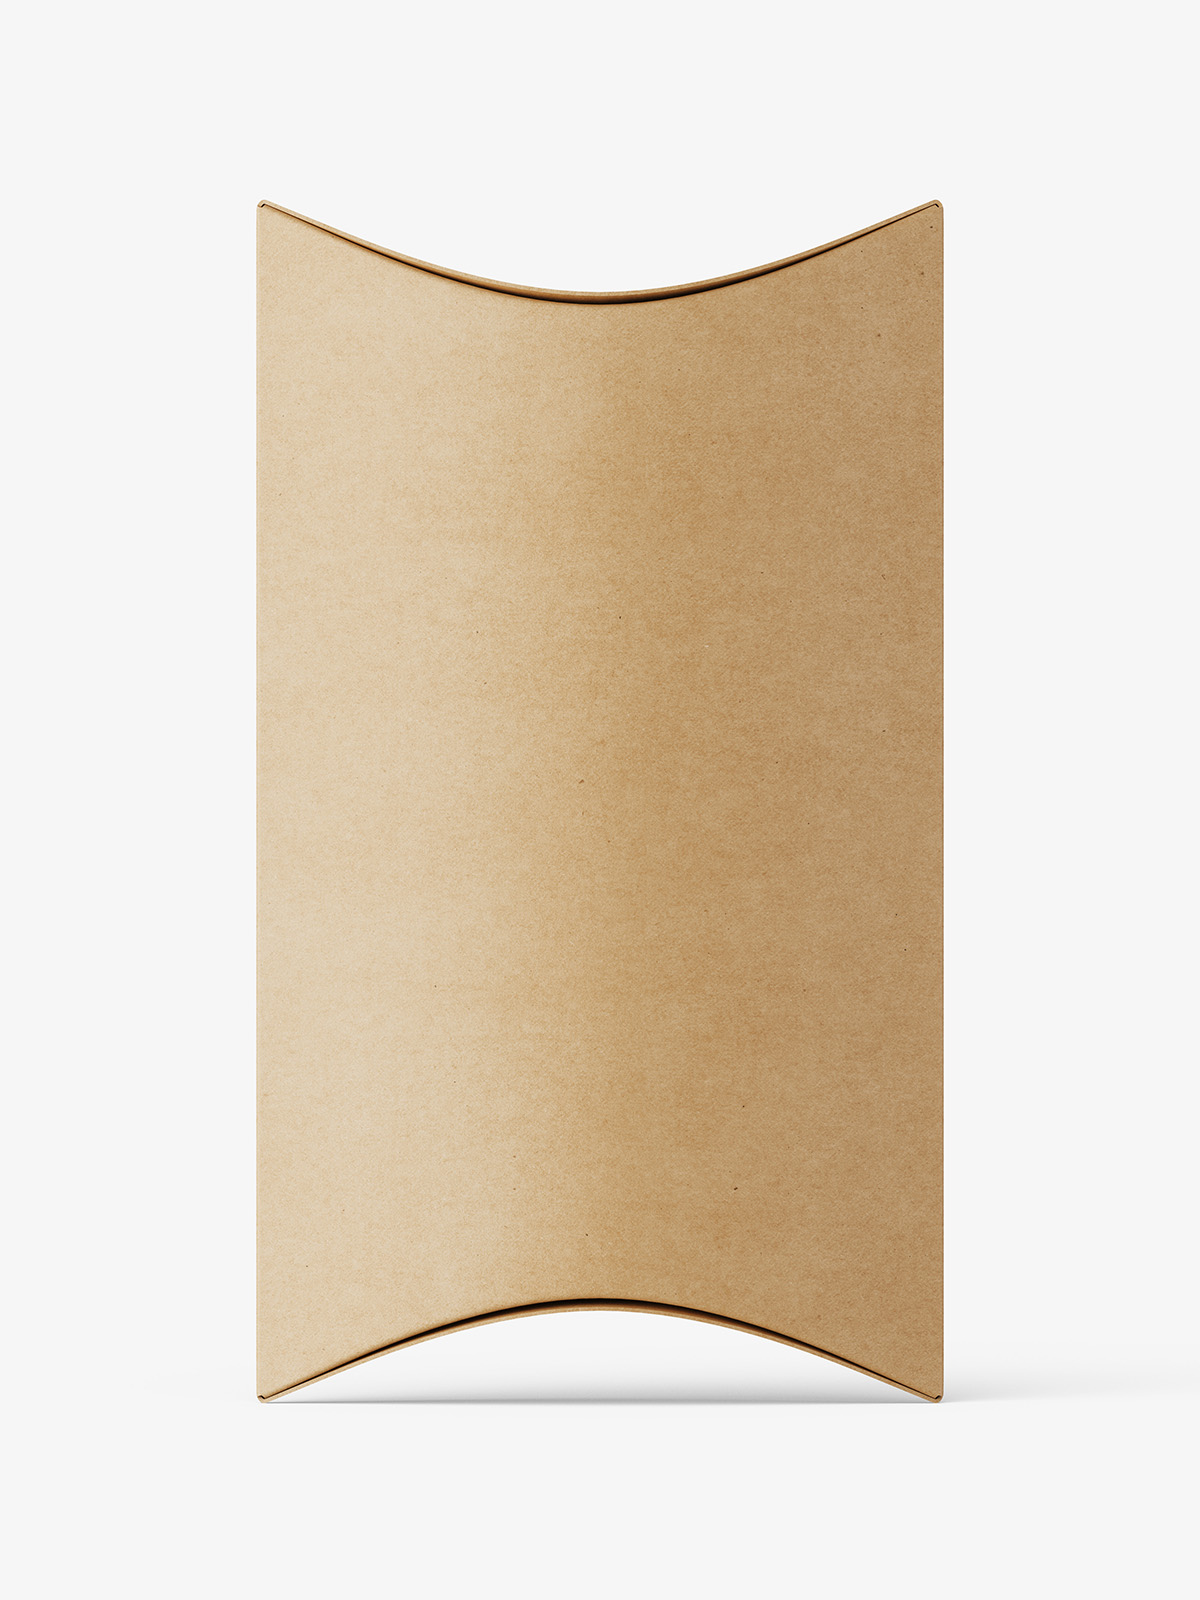 splendid-actually-gift-wrap-style-pillow-boxes